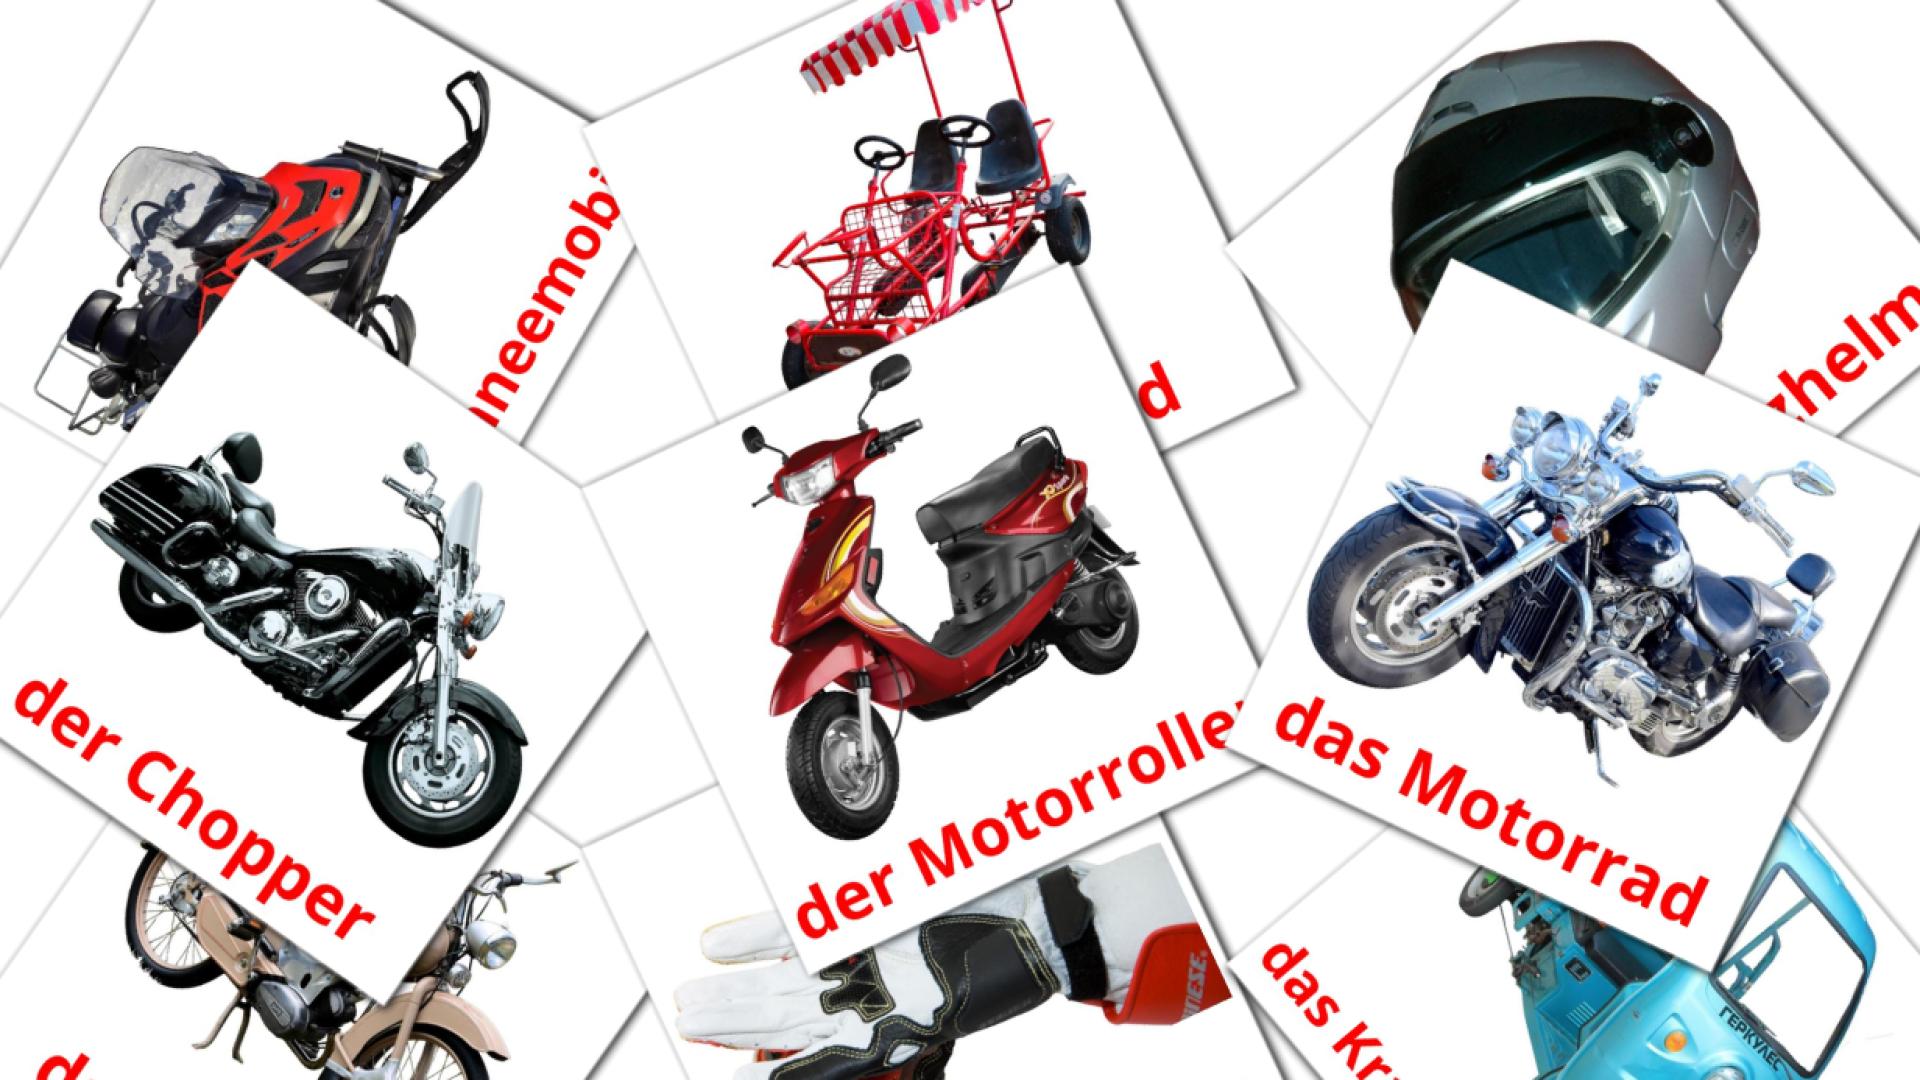 Motocicletas - tarjetas de vocabulario en alemán